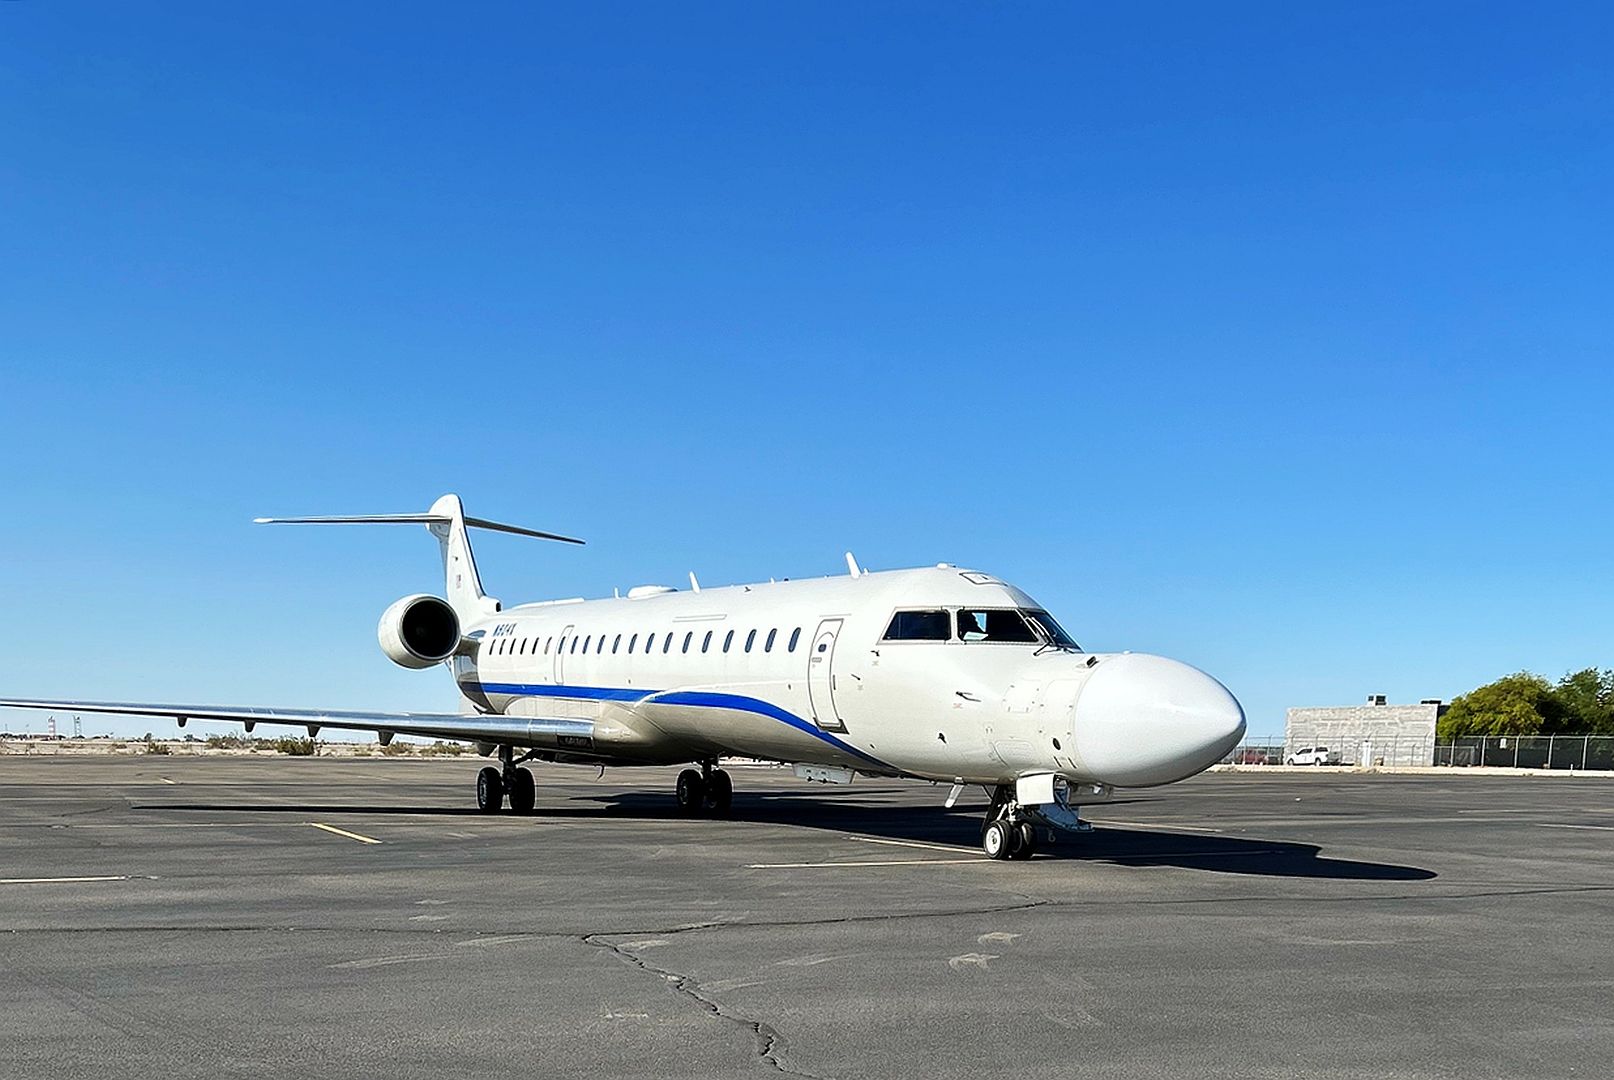 700 Jet Was Used At EDGE 23 In Yuma Arizona